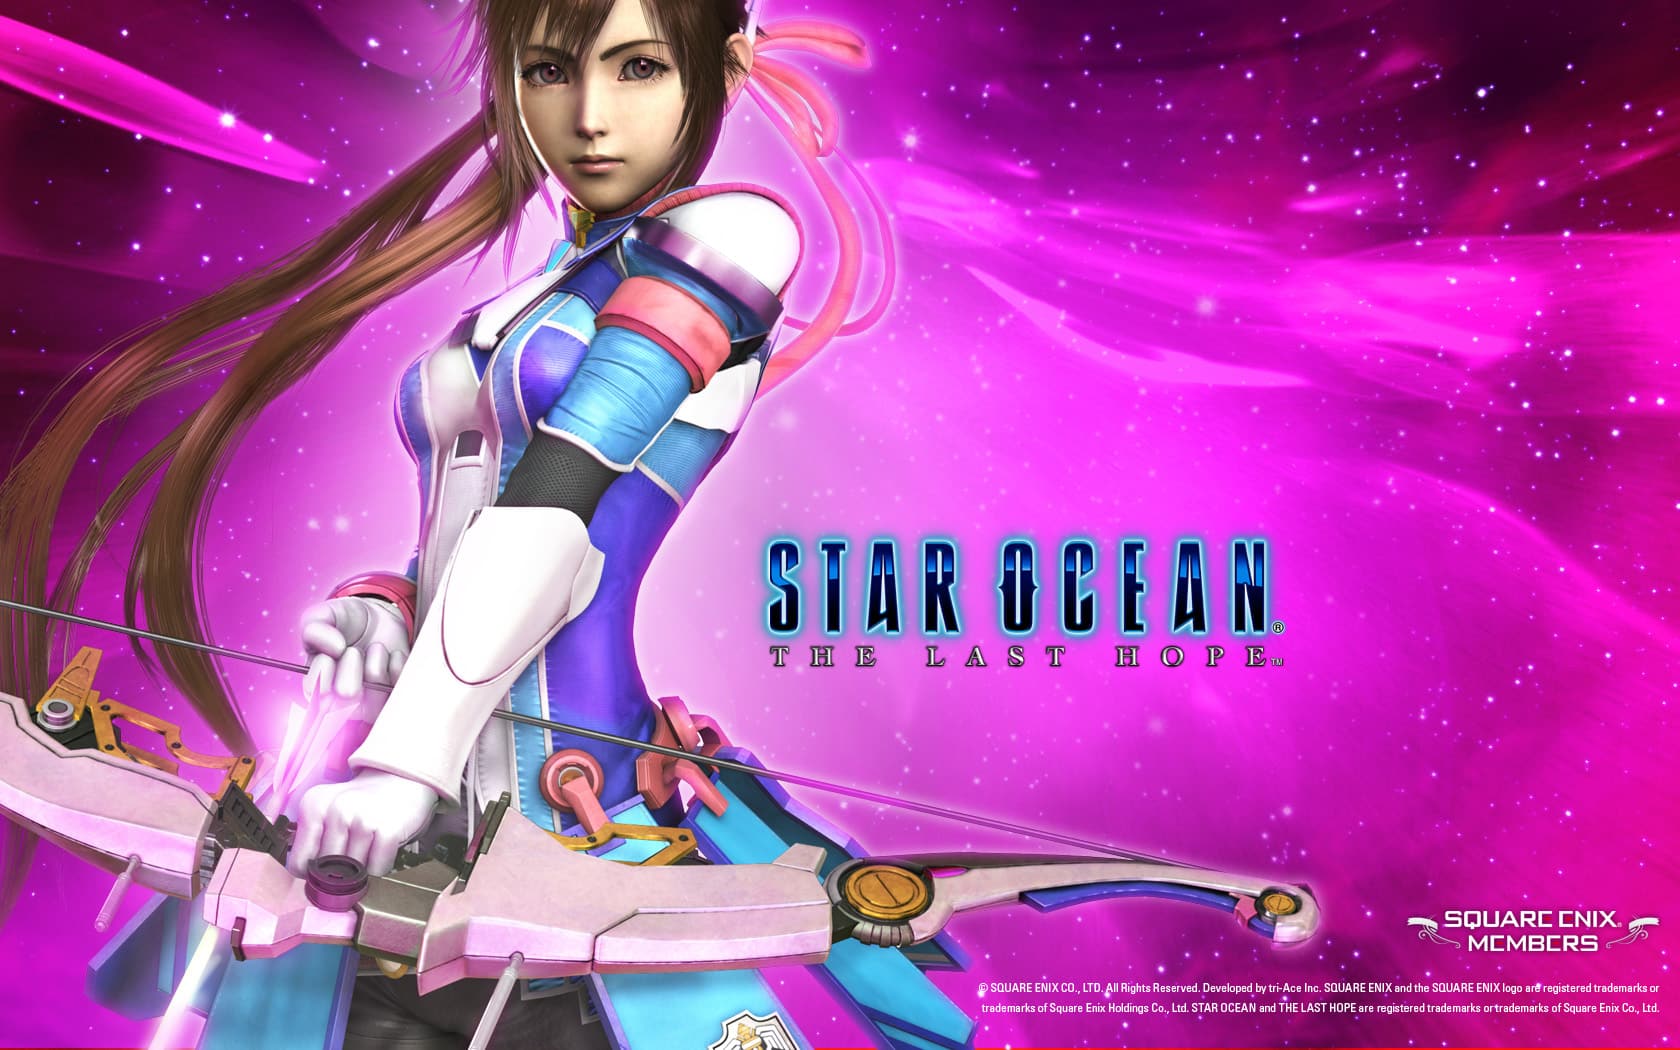 Star_Ocean_The_Last_Hope_PAL_XBOX360-STRANGE torrent on